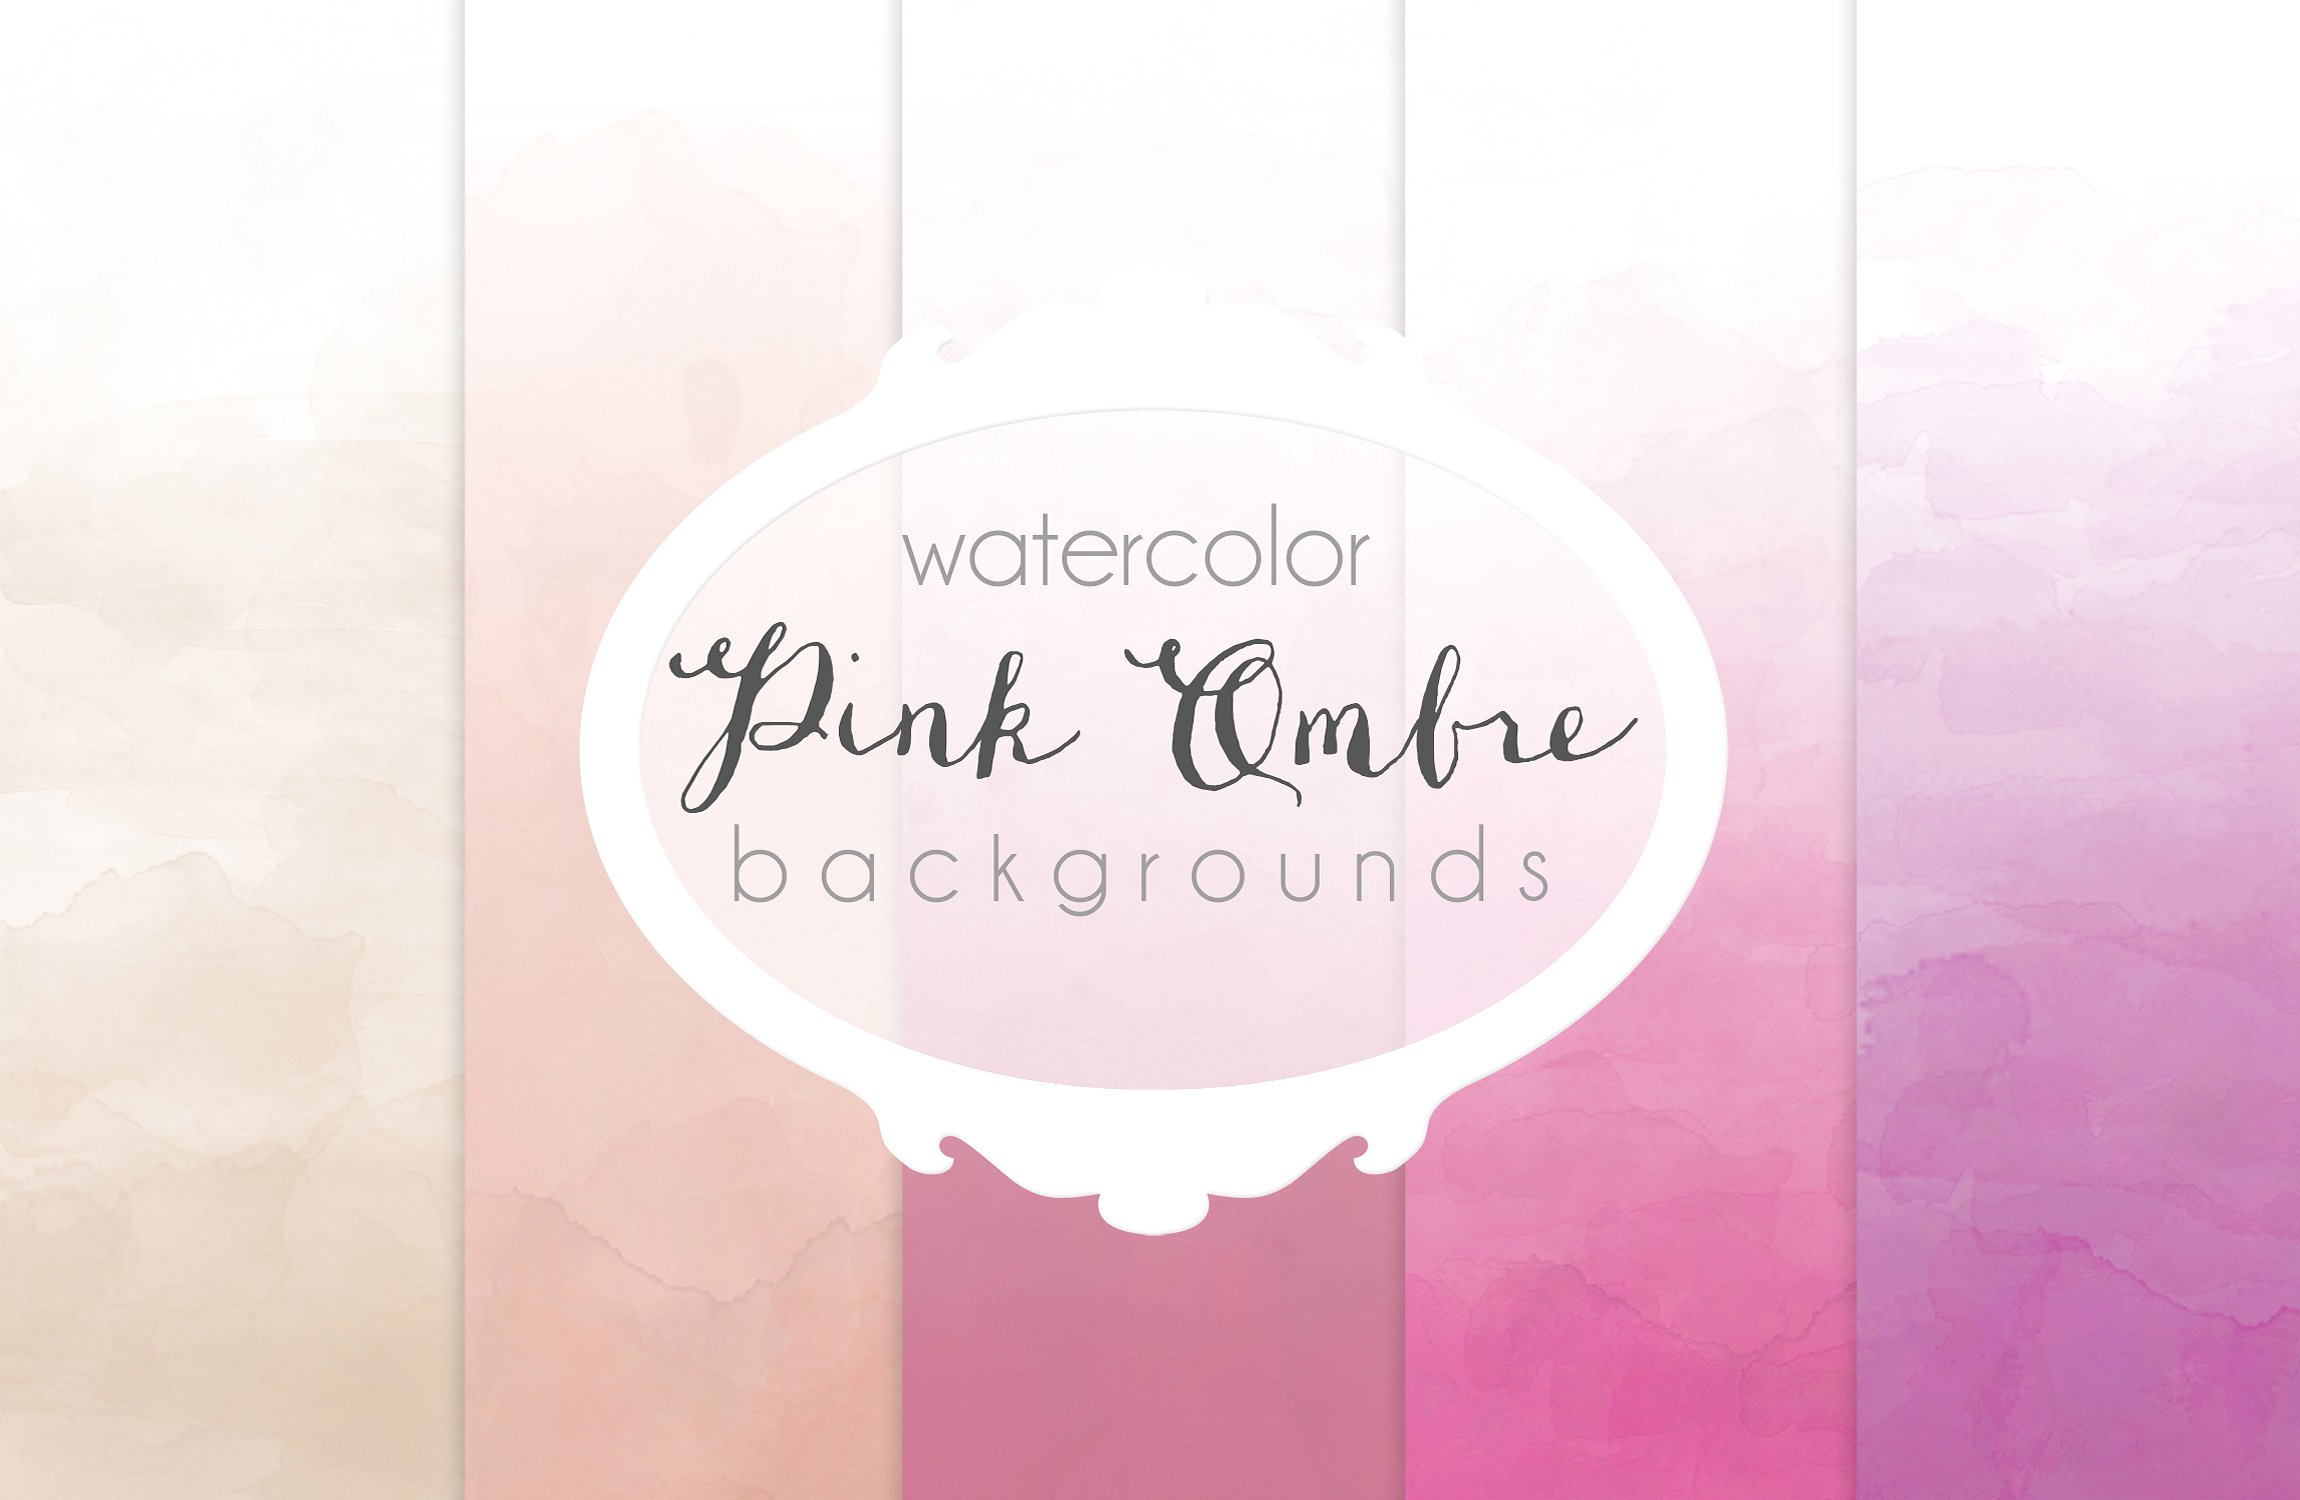 深浅条纹水彩背景纹理 Pink Ombre watercolor backgrounds插图(1)